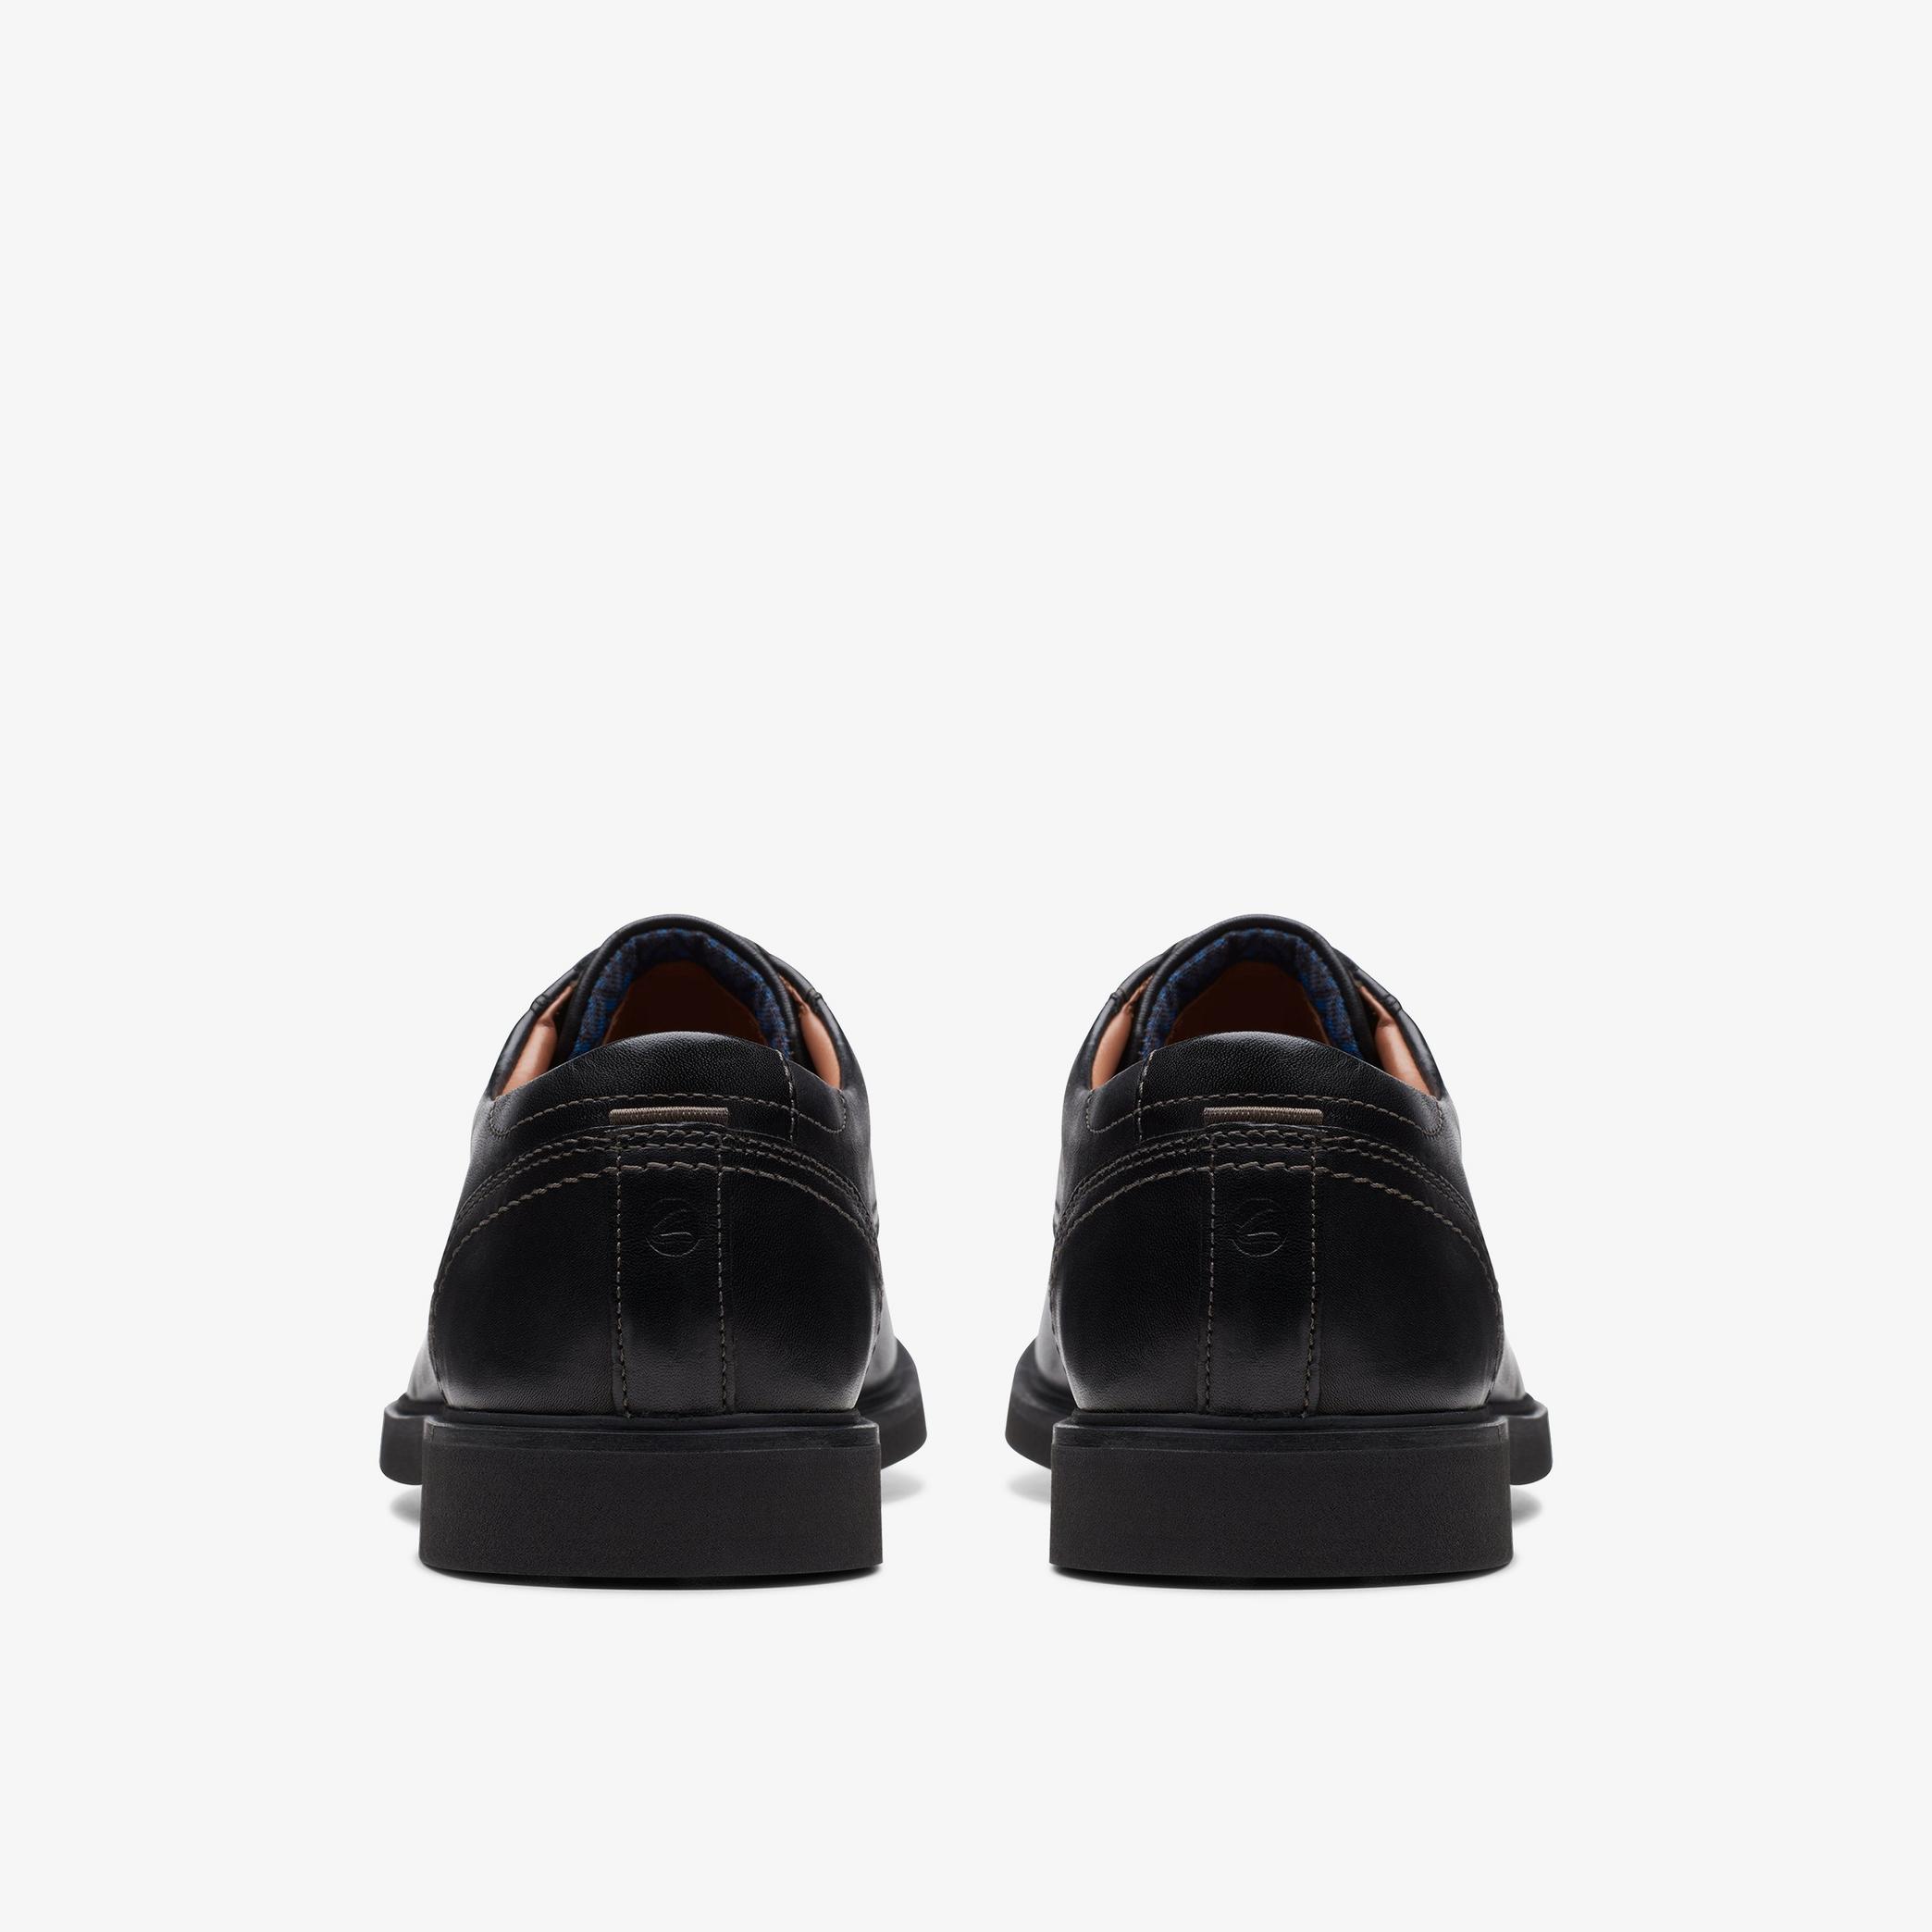 Chaussures Oxford en cuir noir Malwood Lace, vue 5 de 6